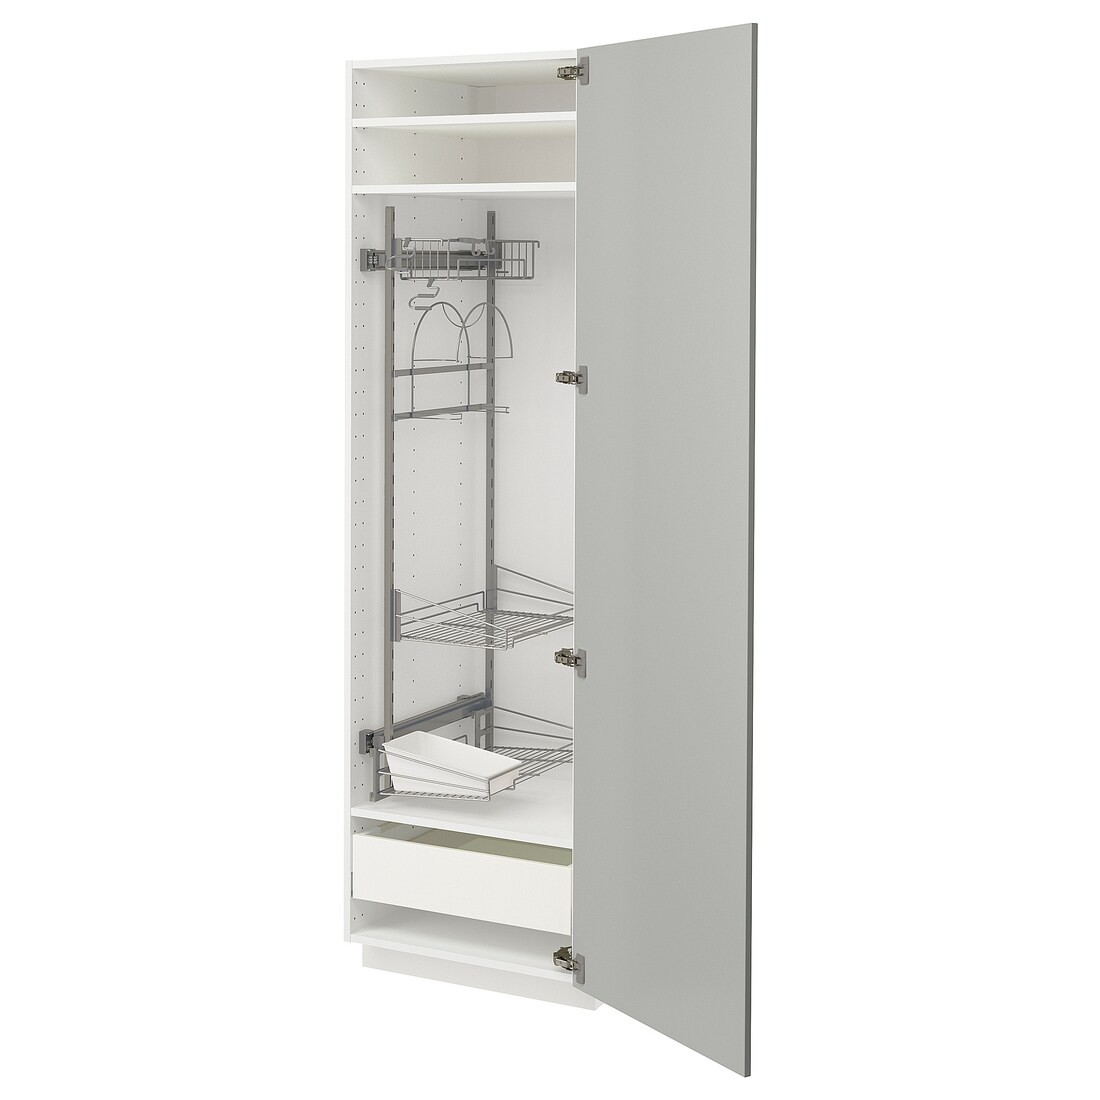 METOD / MAXIMERA Высокий шкаф с отделением для аксессуаров для уборки, белый / Хавсторп светло-серый, 60x60x200 см